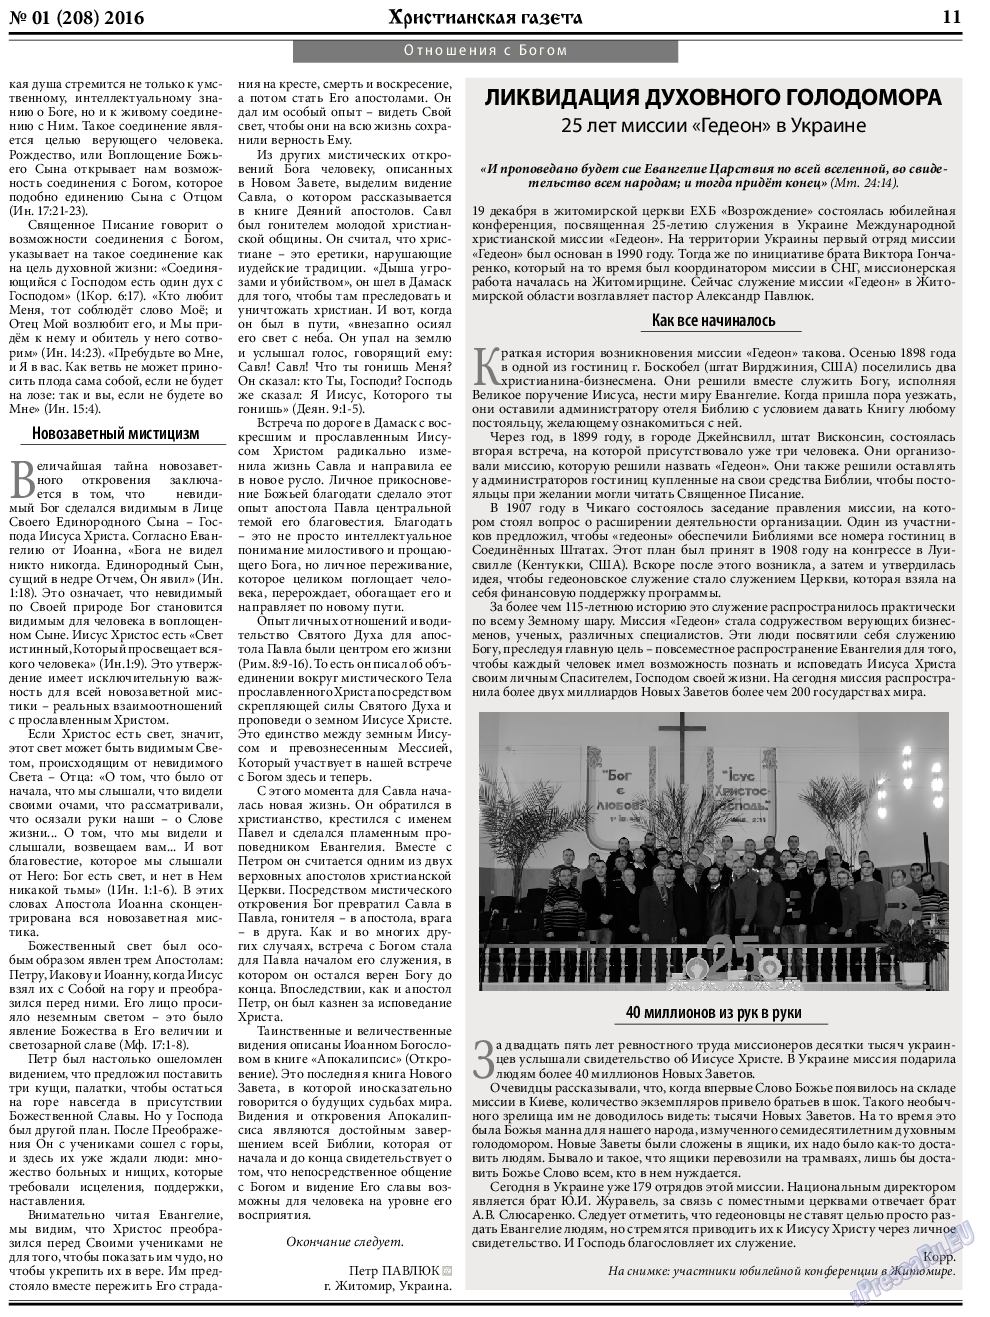 Христианская газета, газета. 2016 №1 стр.11